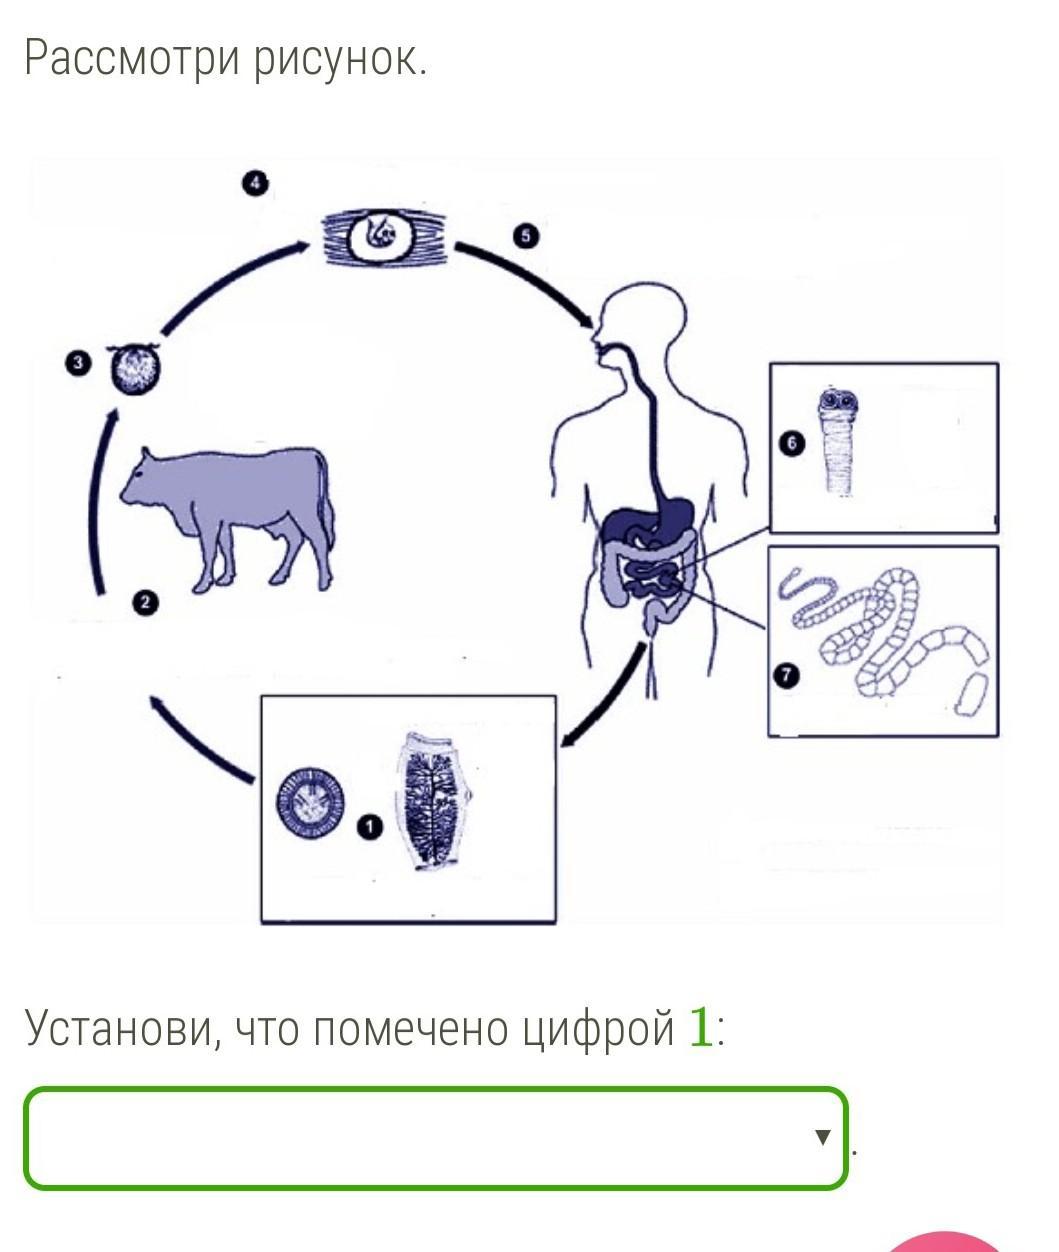 Человек для бычьего цепня хозяин. Схема развития бычьего цепня. Жизненный цикл бычьего цепня. Цикл развития бычьего цепня рисунок. Жизненный цикл бычьего цепня рисунок.